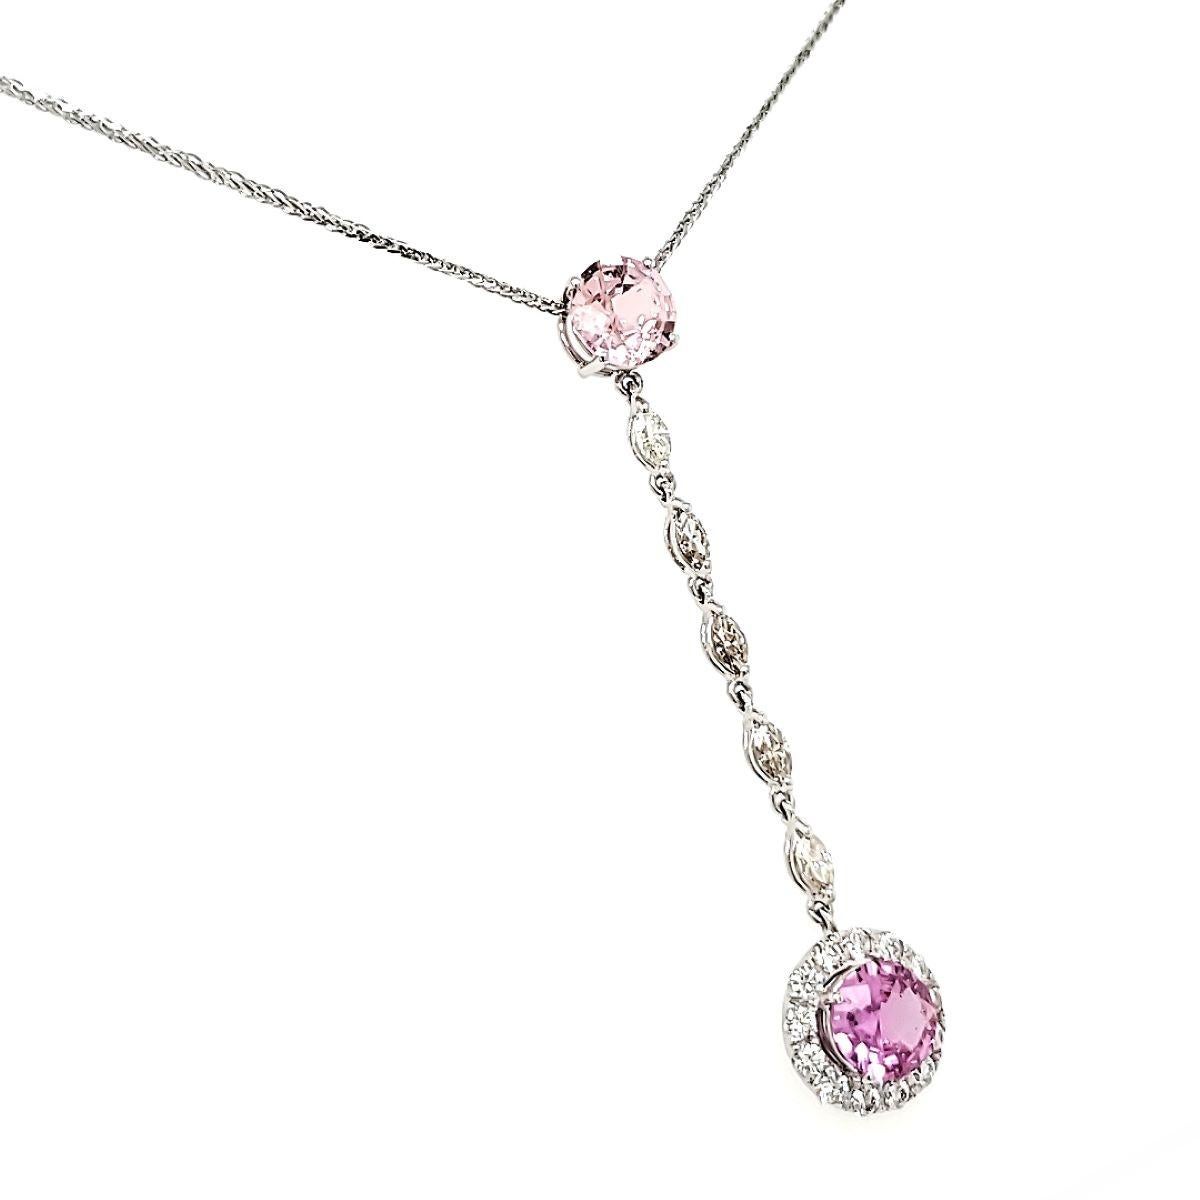 Charmieren und fesseln Sie mit jedem Schwung.

Dieses schöne Stück besteht aus zwei rosa Saphiren im Diamantschliff mit einem Gesamtgewicht von 2,44 Karat.

Den zarten Tropfen zieren fünf marquise Diamanten von insgesamt 0,42 Karat, die in einer